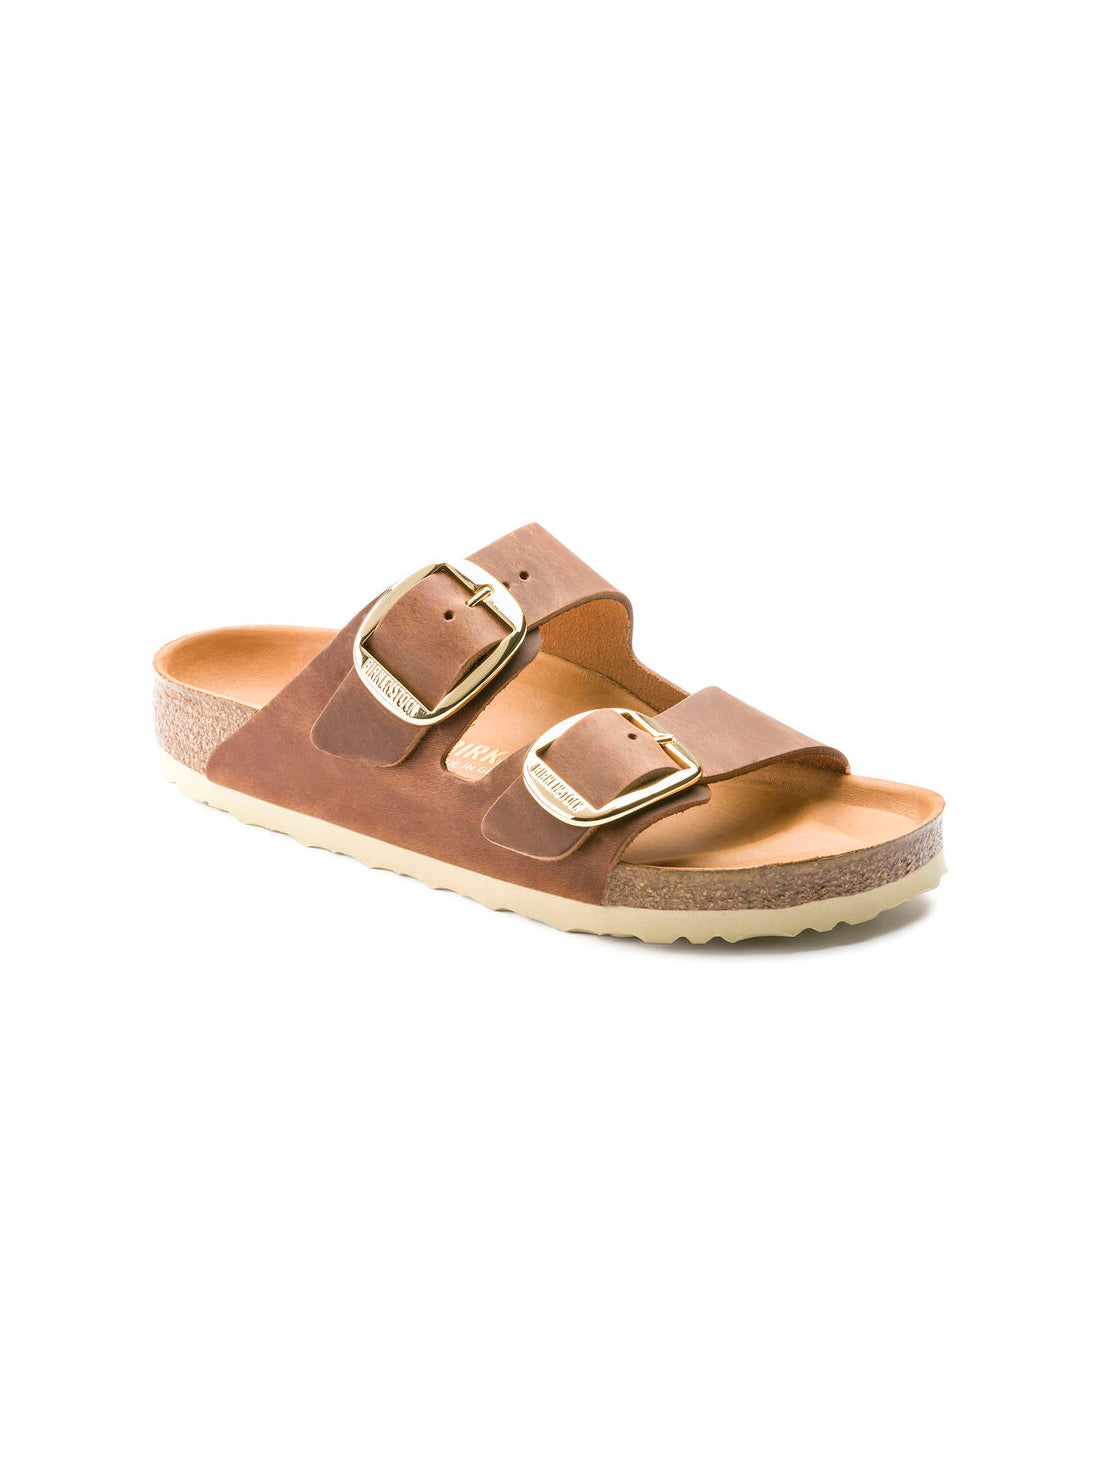 birkenstock arizona big buckle sandals in oiled leather cognac narrow